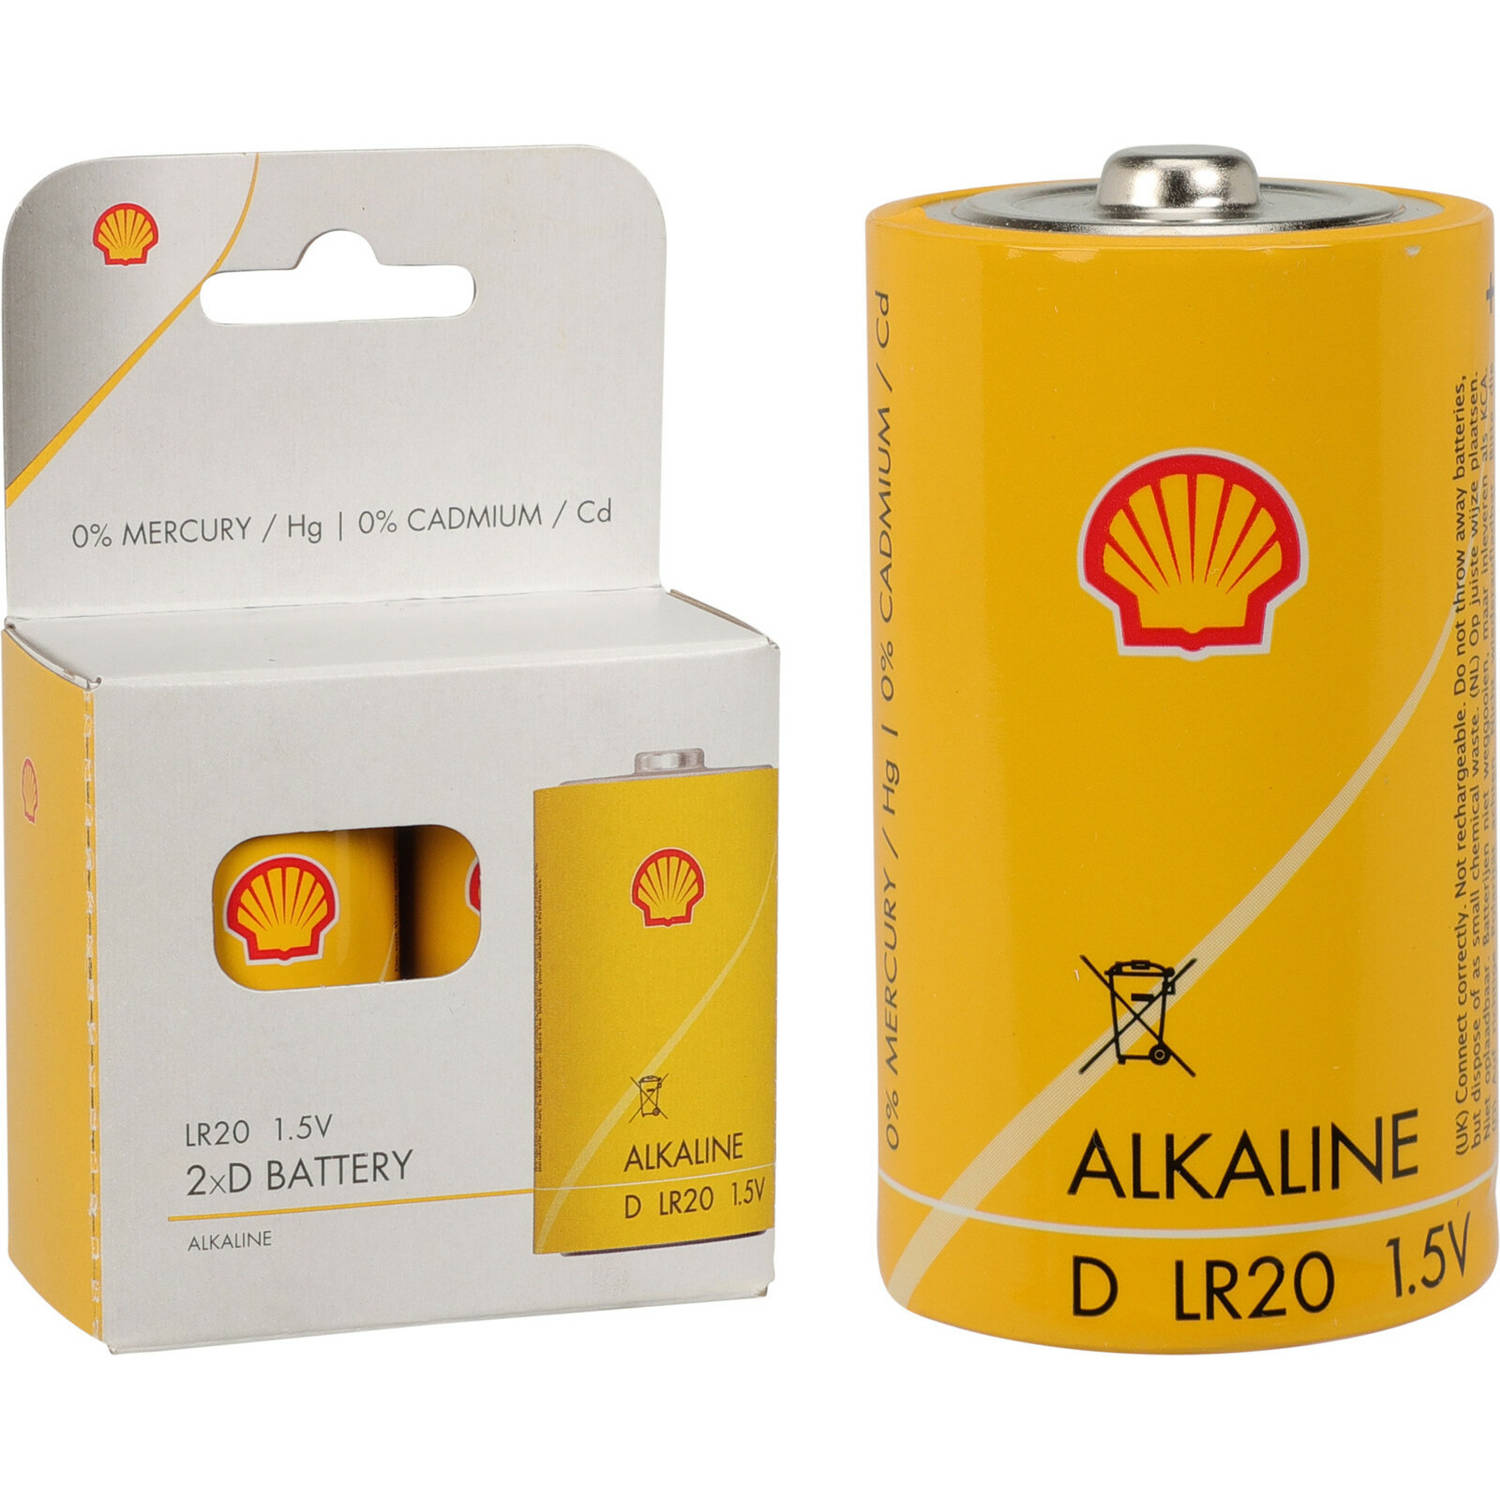 Shell Batterijen type LR20 2x stuks Alkaline Longlife Batterijen